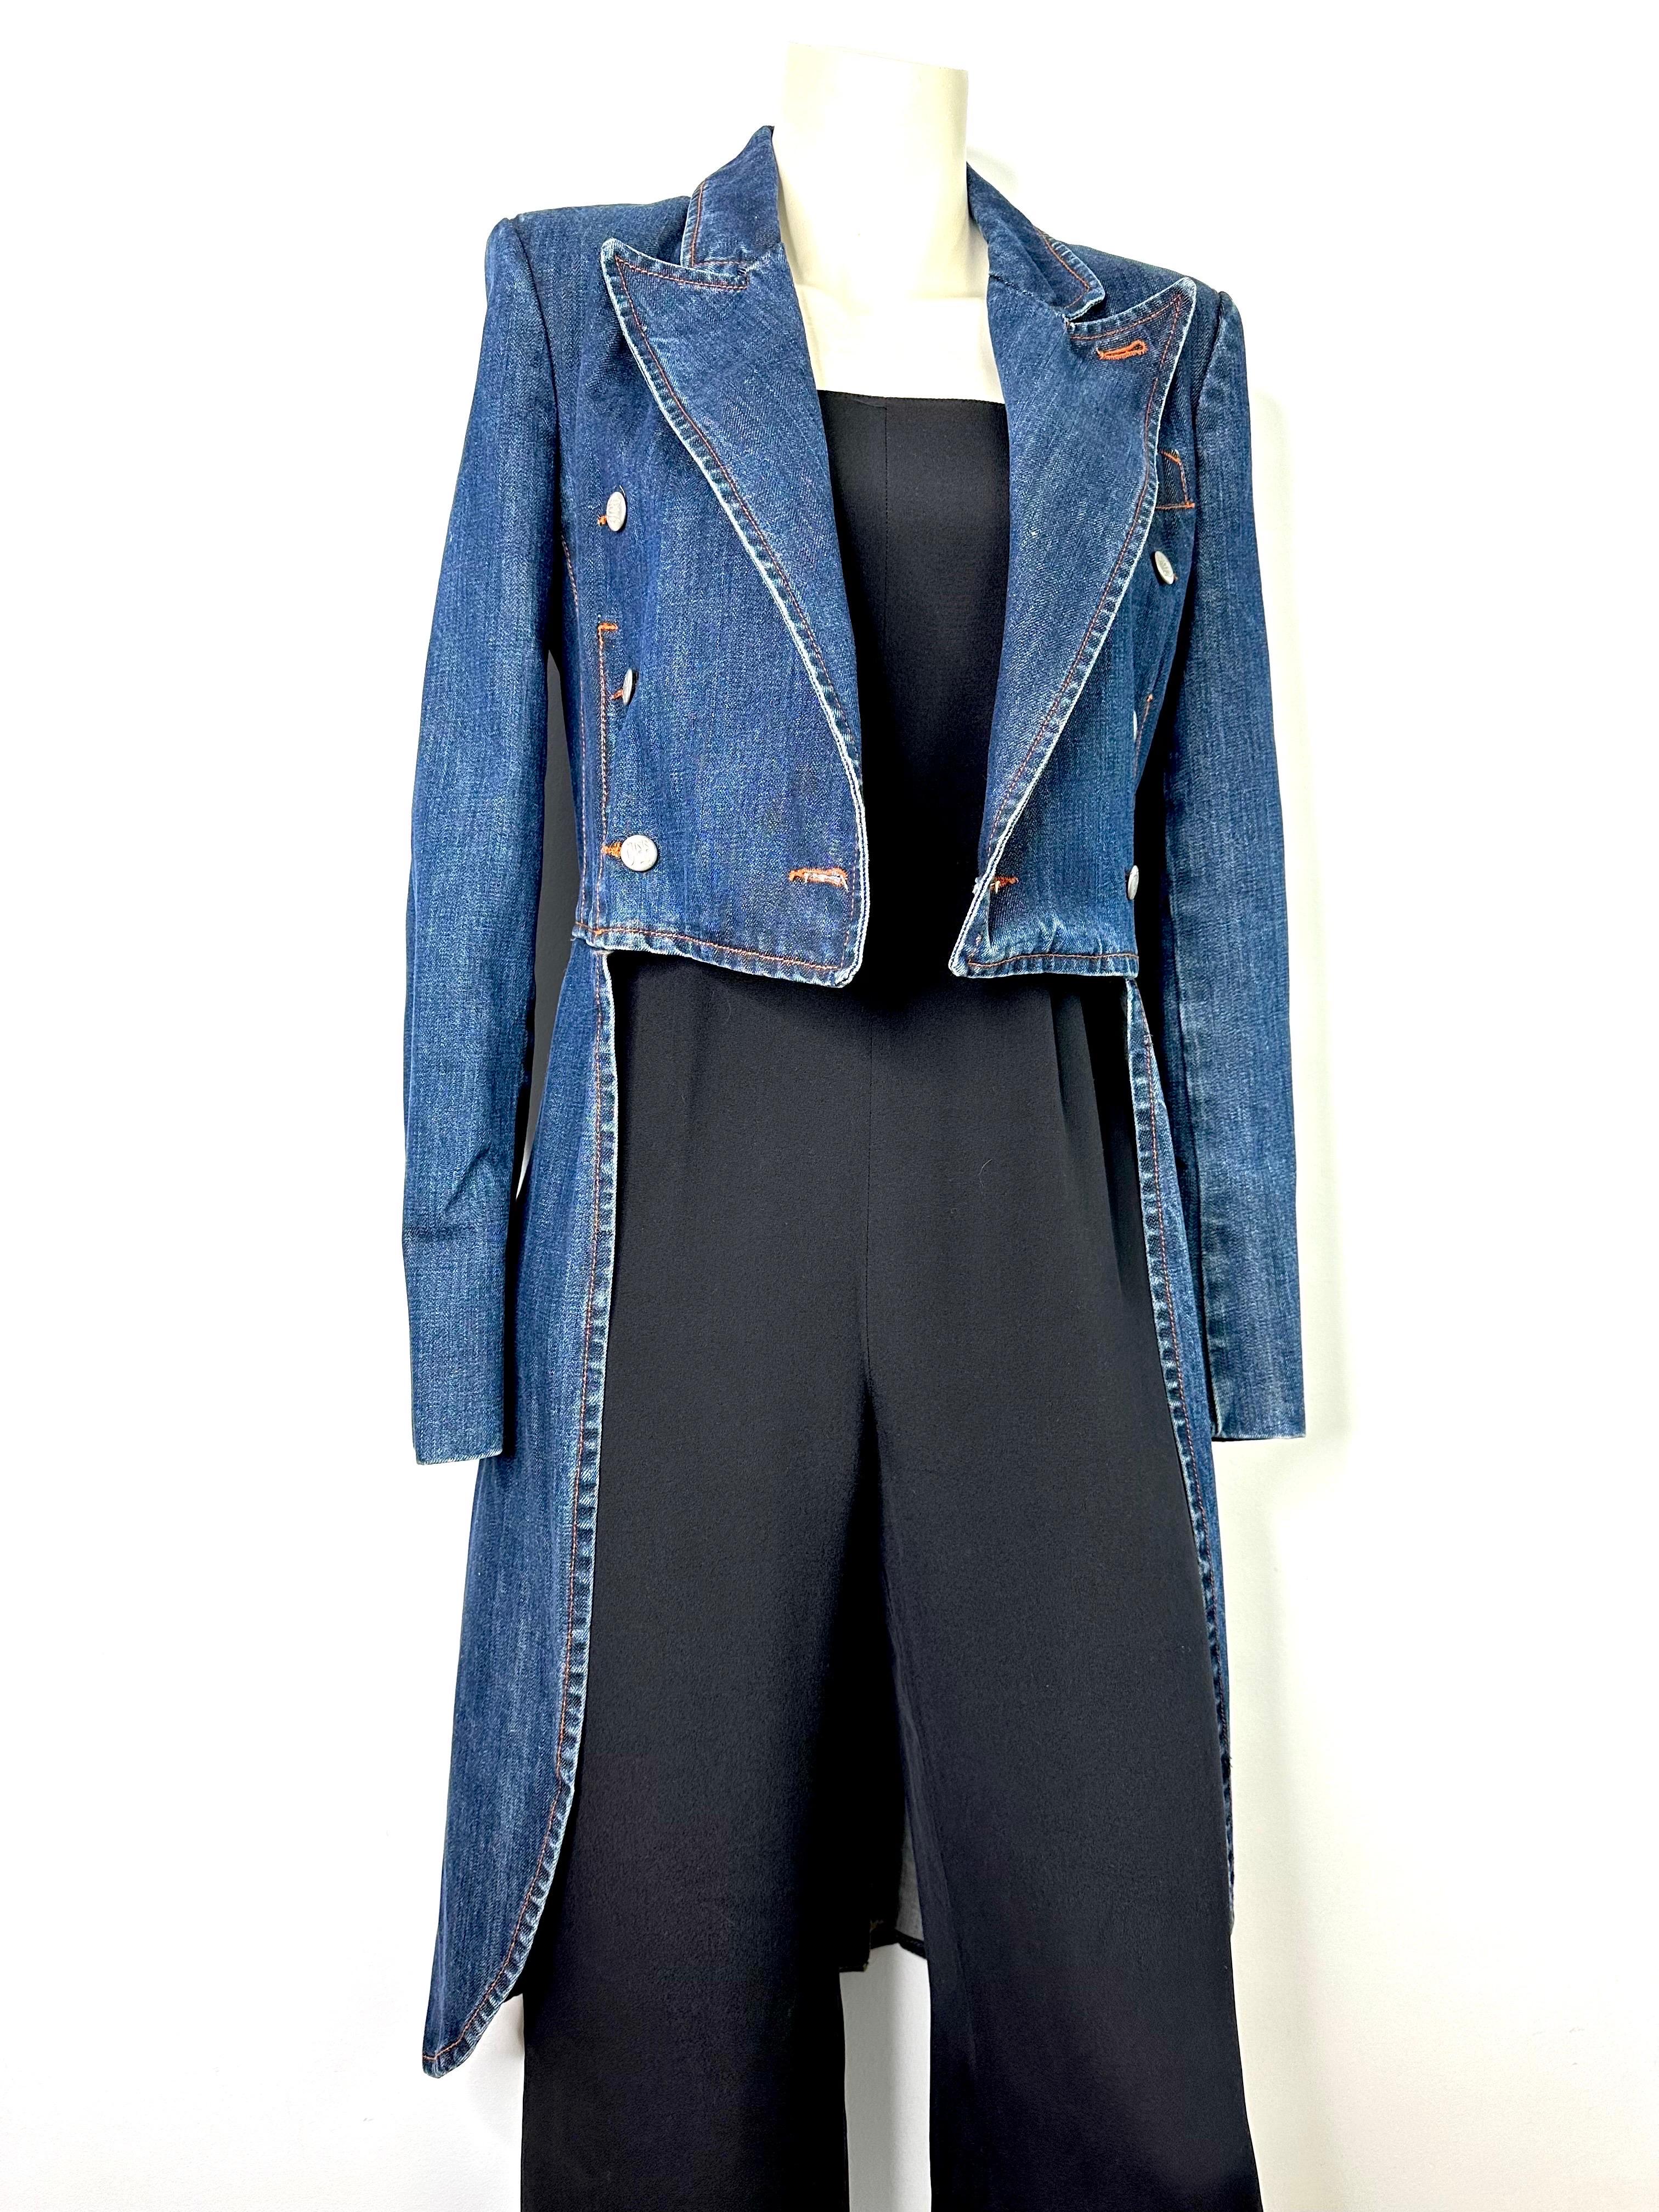 Zeitlos und offiziell, die Frackjacke von Jean Paul Gaultier Jeans, Vintage aus den 1990er Jahren.
Zweireihige Knopfleiste, charakteristische Knöpfe.
Epauletten im Innenfutter.
Schlitzfalte im Rücken
Natürliche Denim-Patina.
Größe 36FR
Siehe